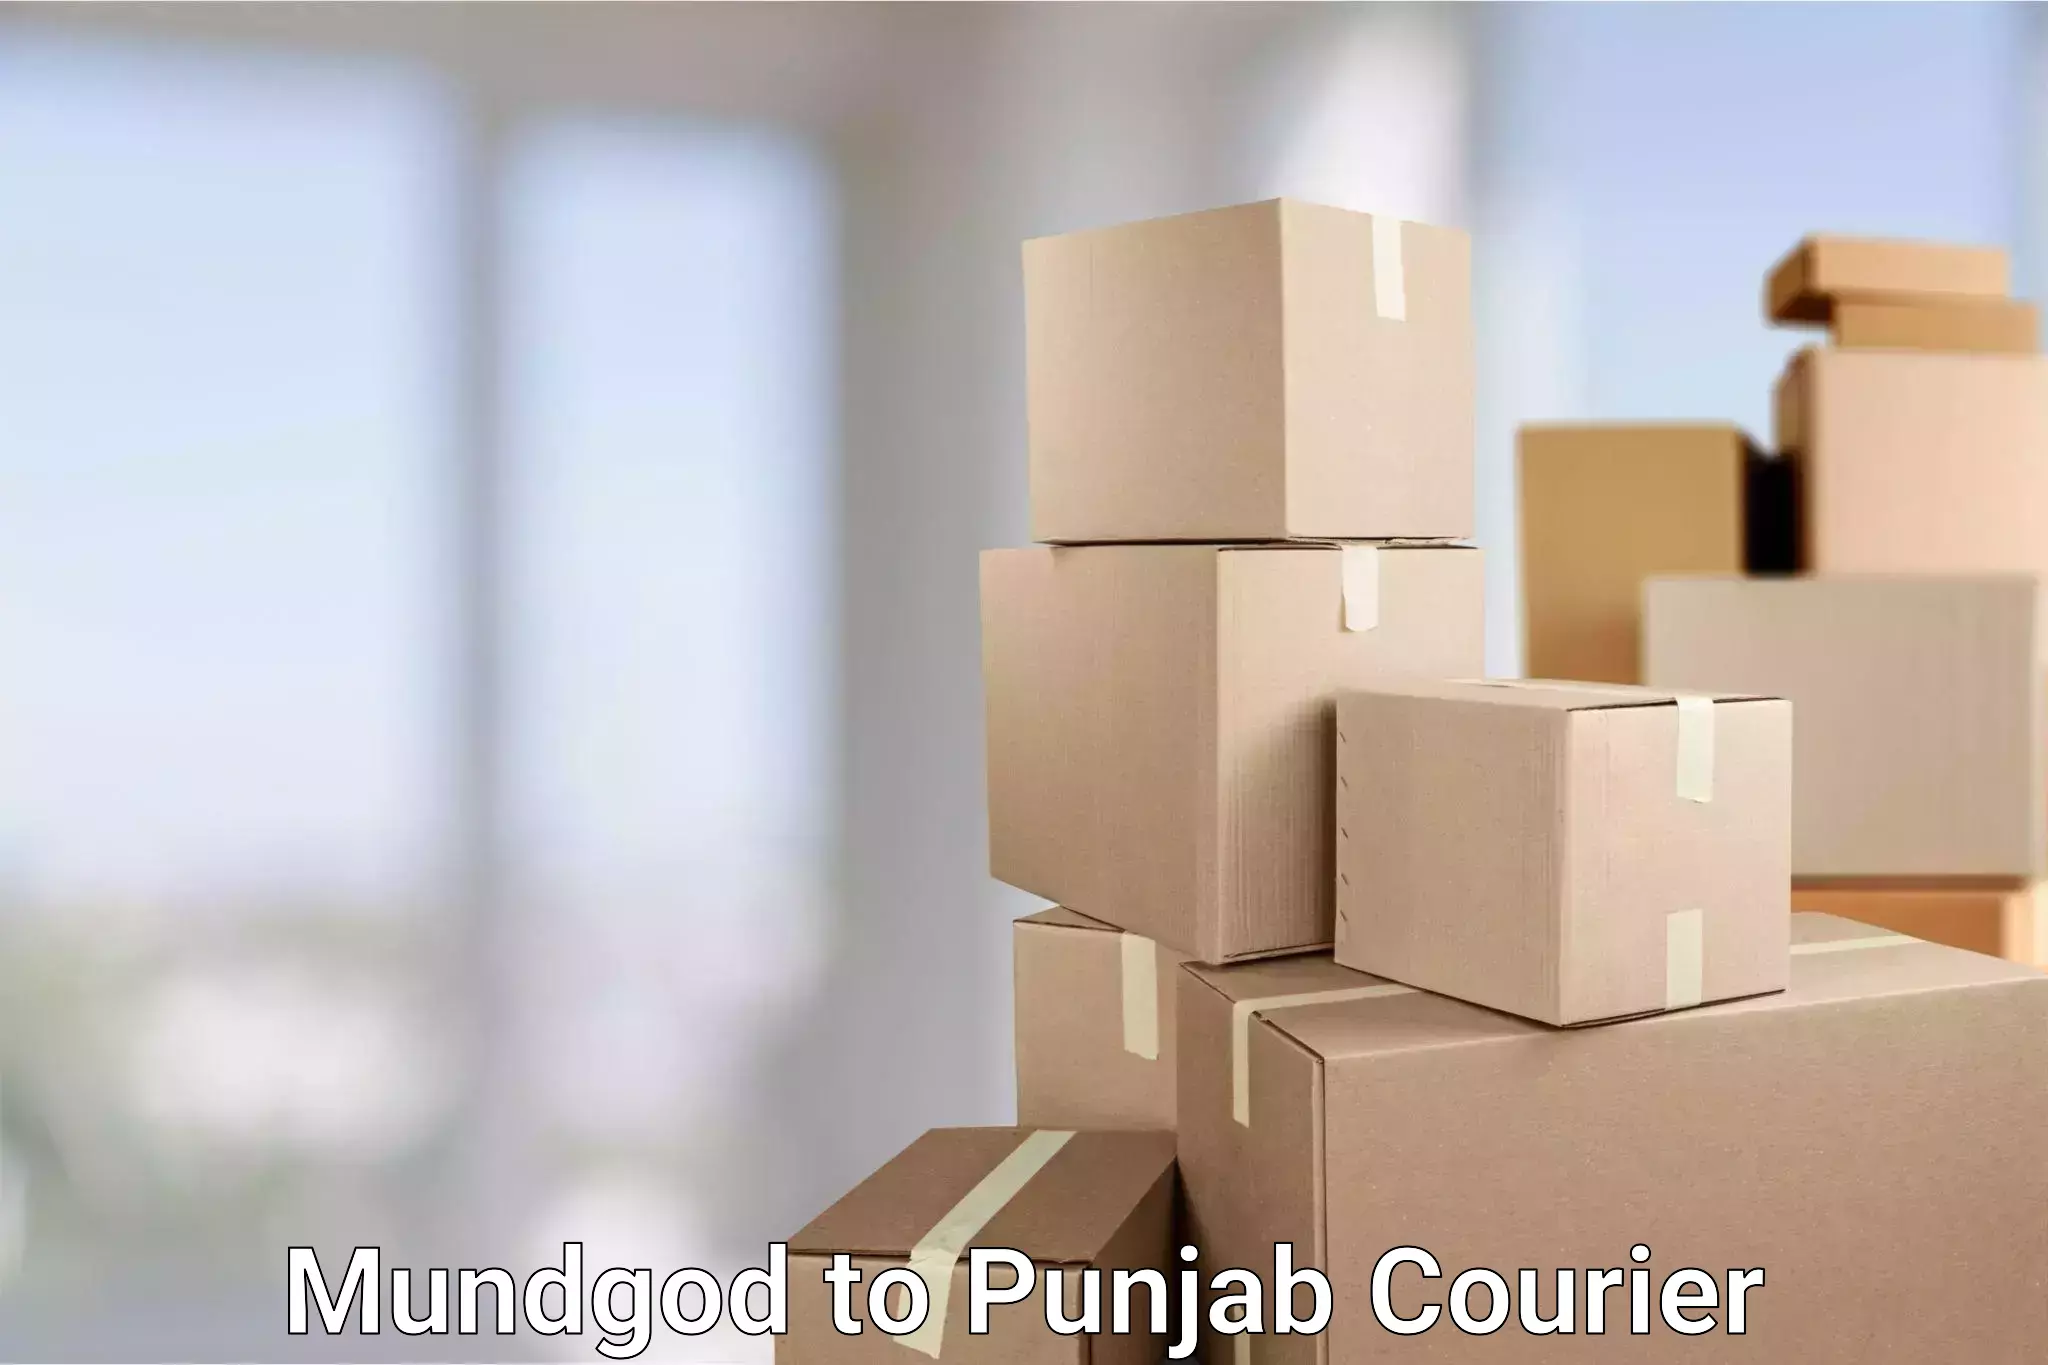 Enhanced tracking features Mundgod to Jalandhar